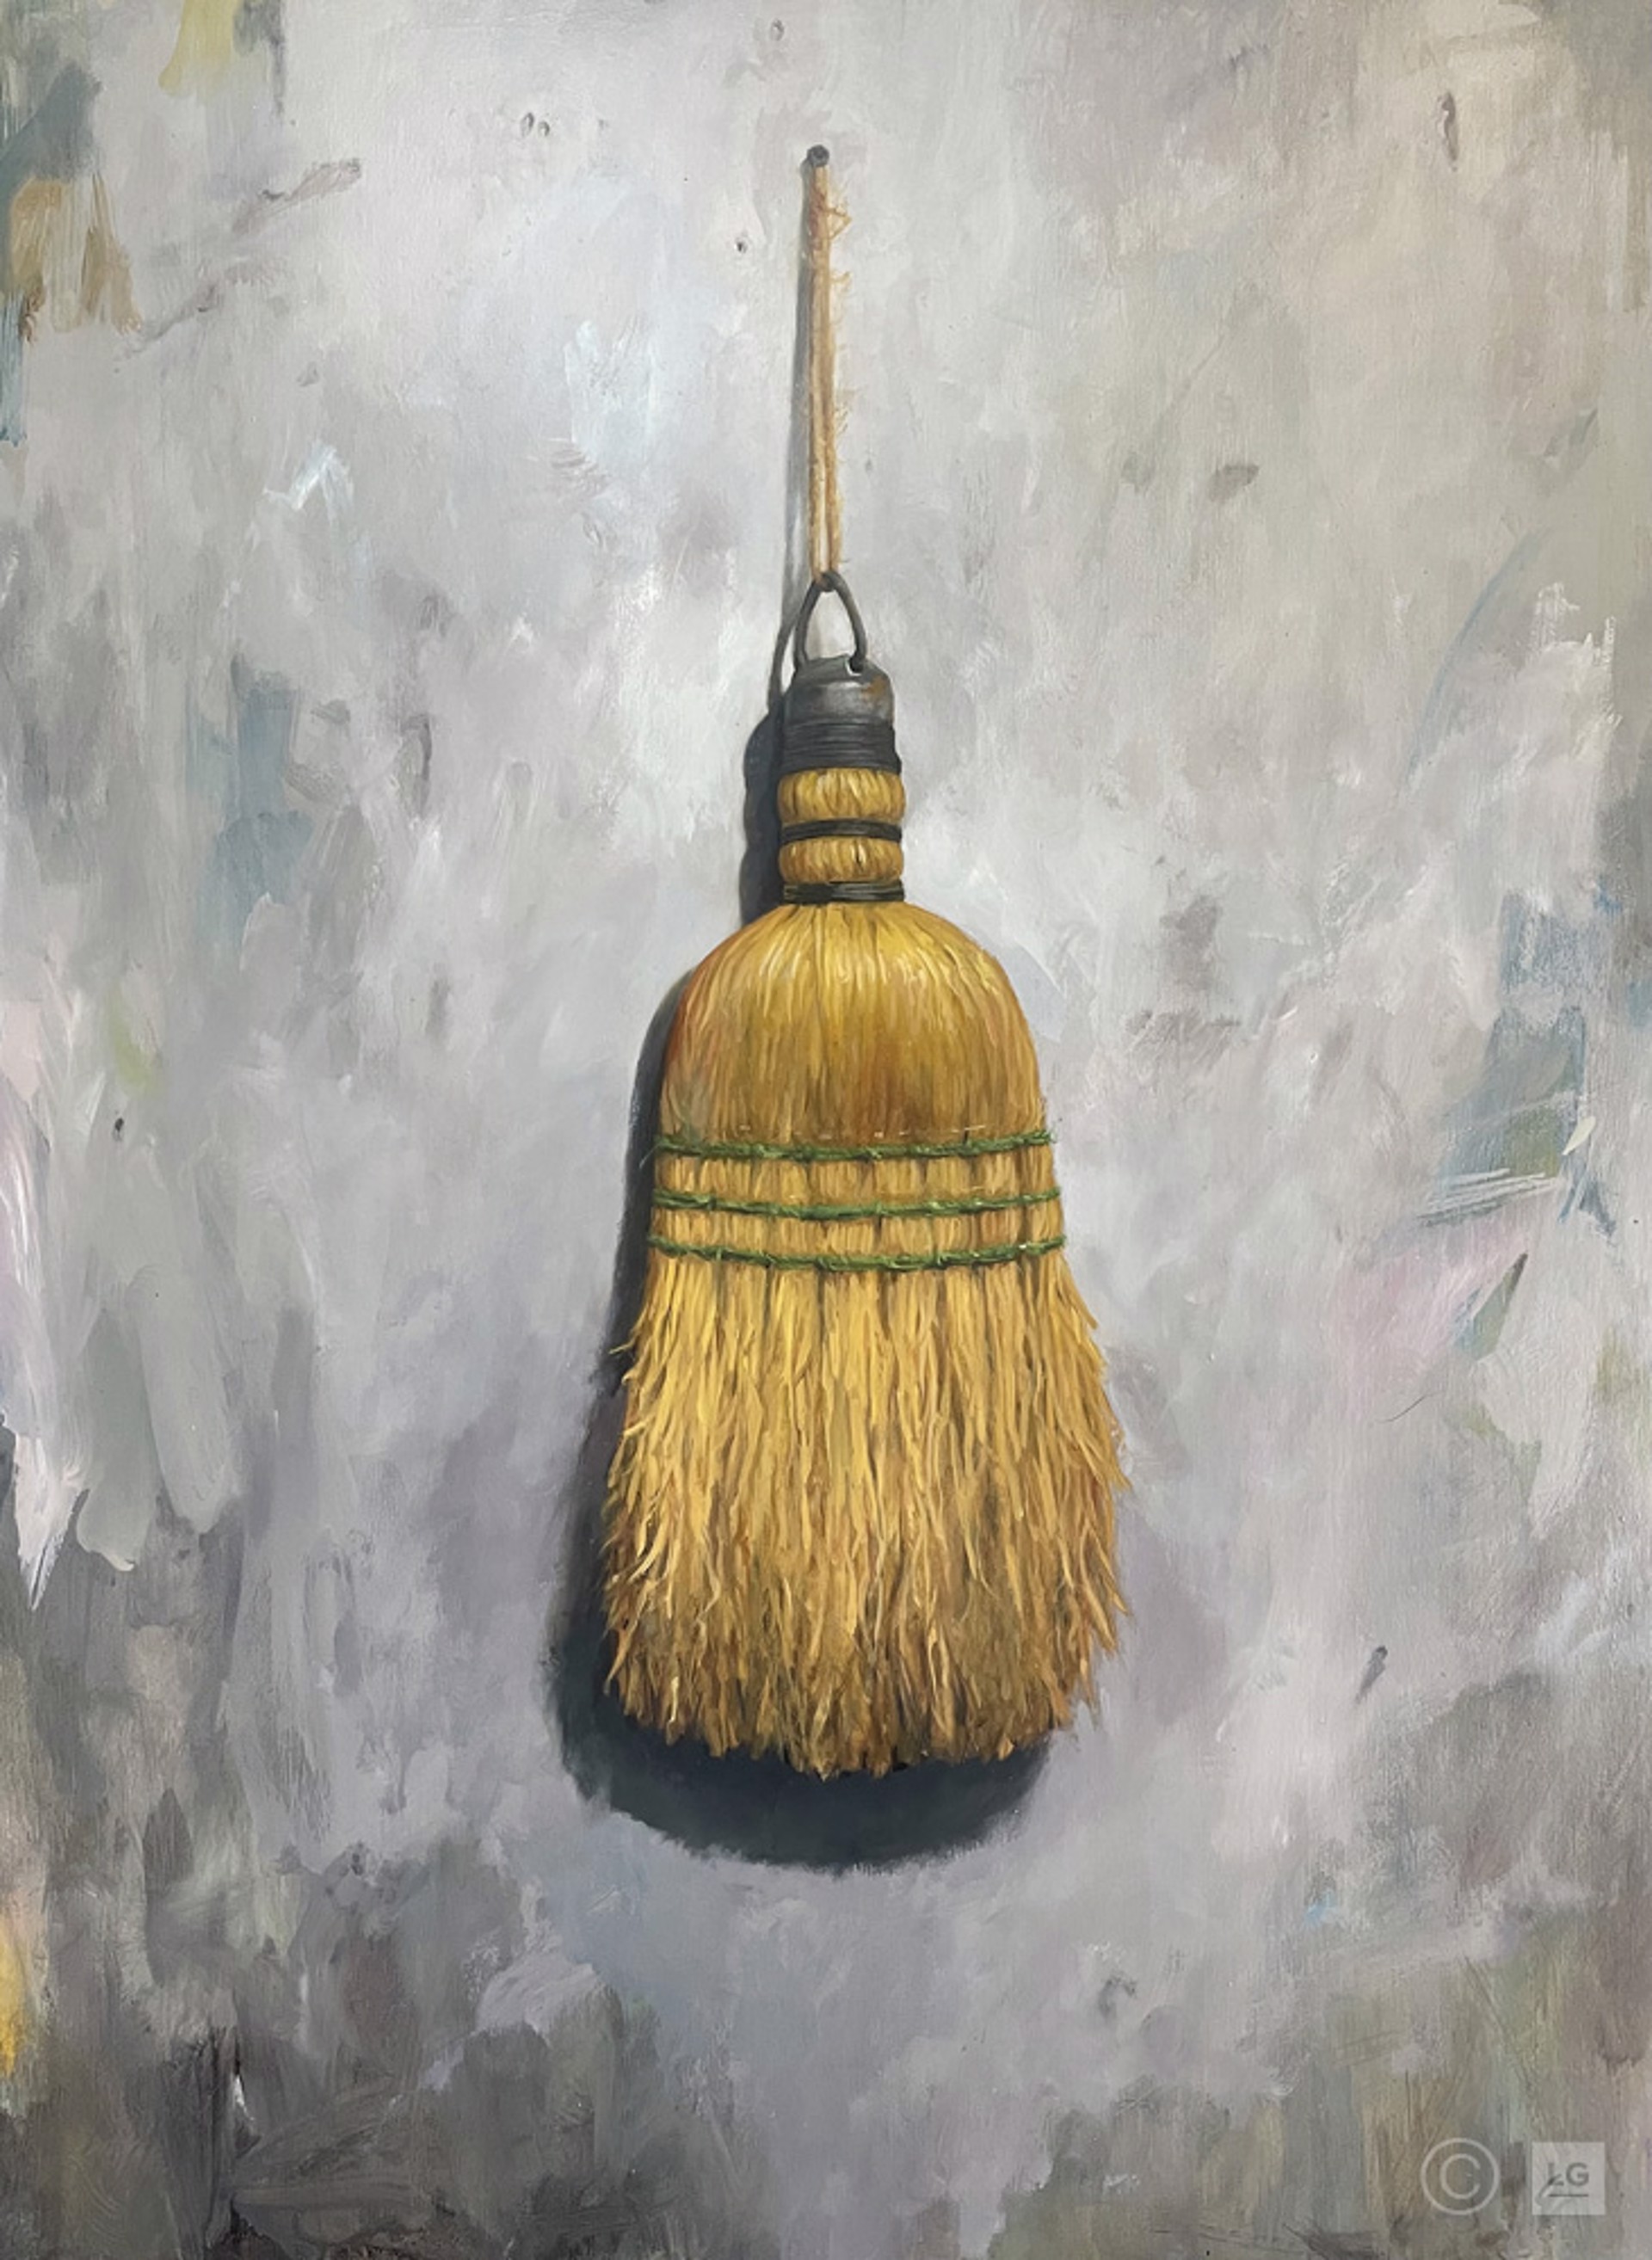 Broom by Eric Wieringa